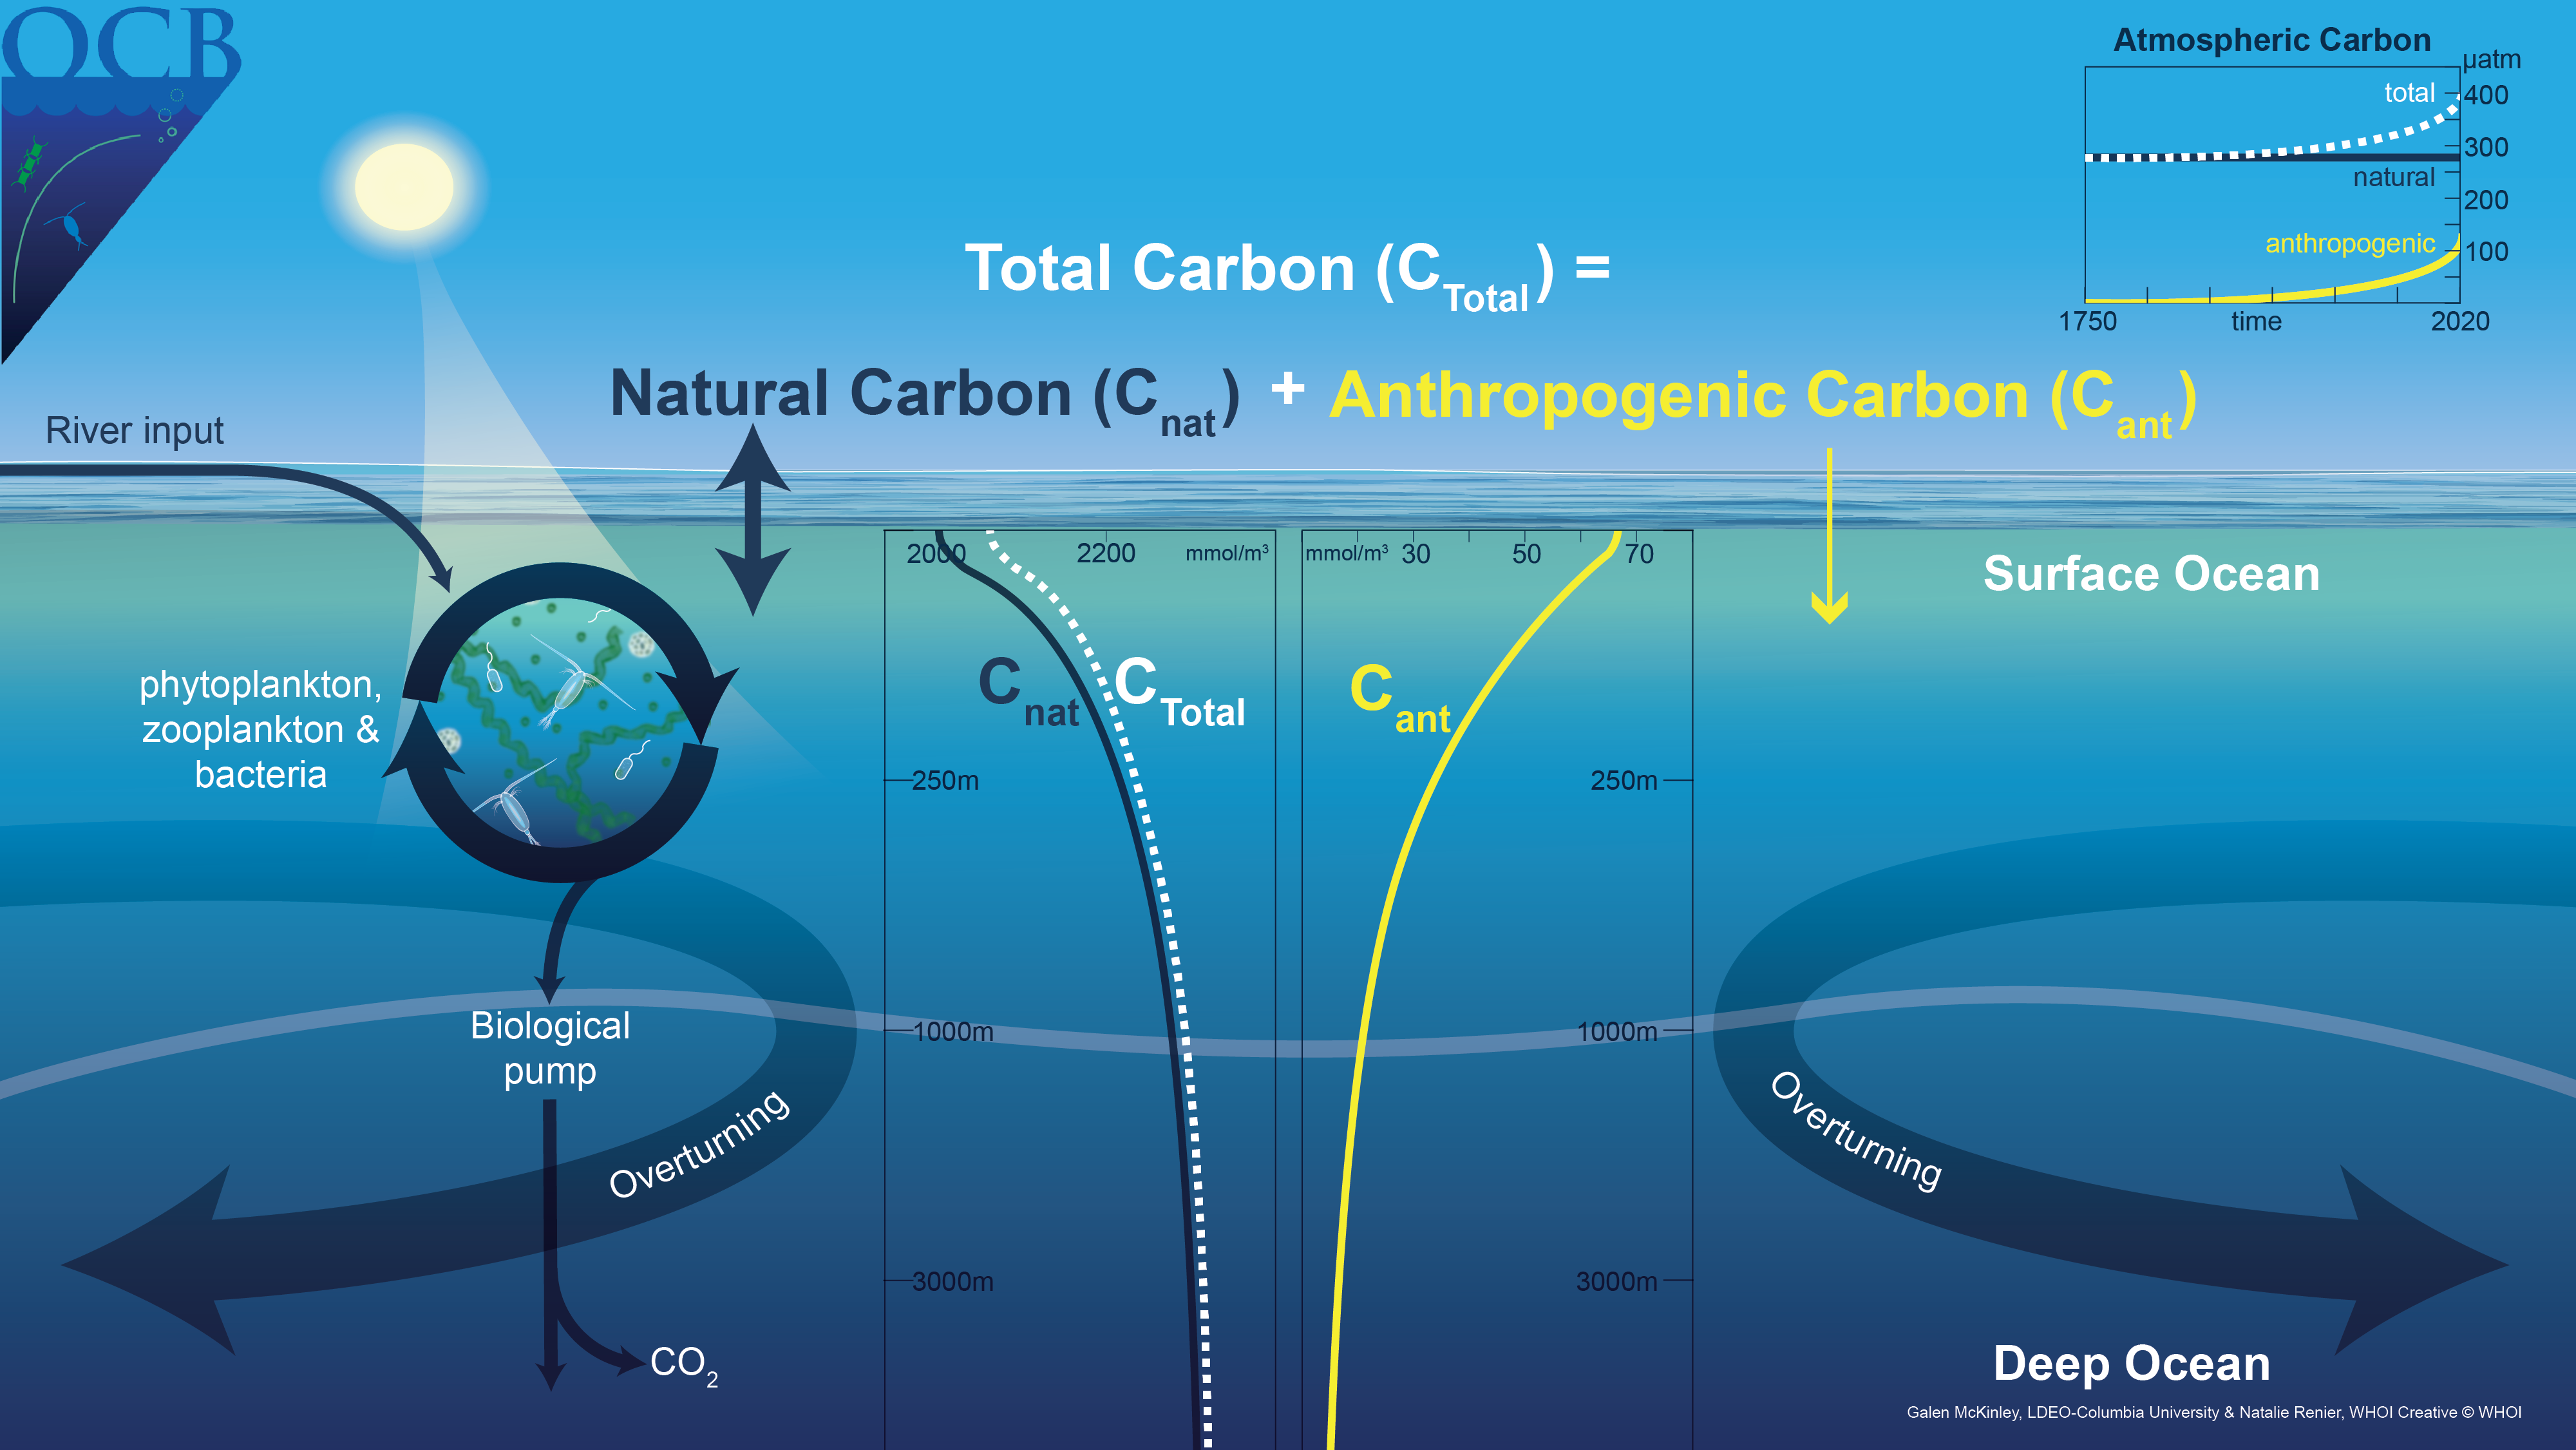 Ciclo del Carbono: Depósitos, Procesos e Impacto Actual 